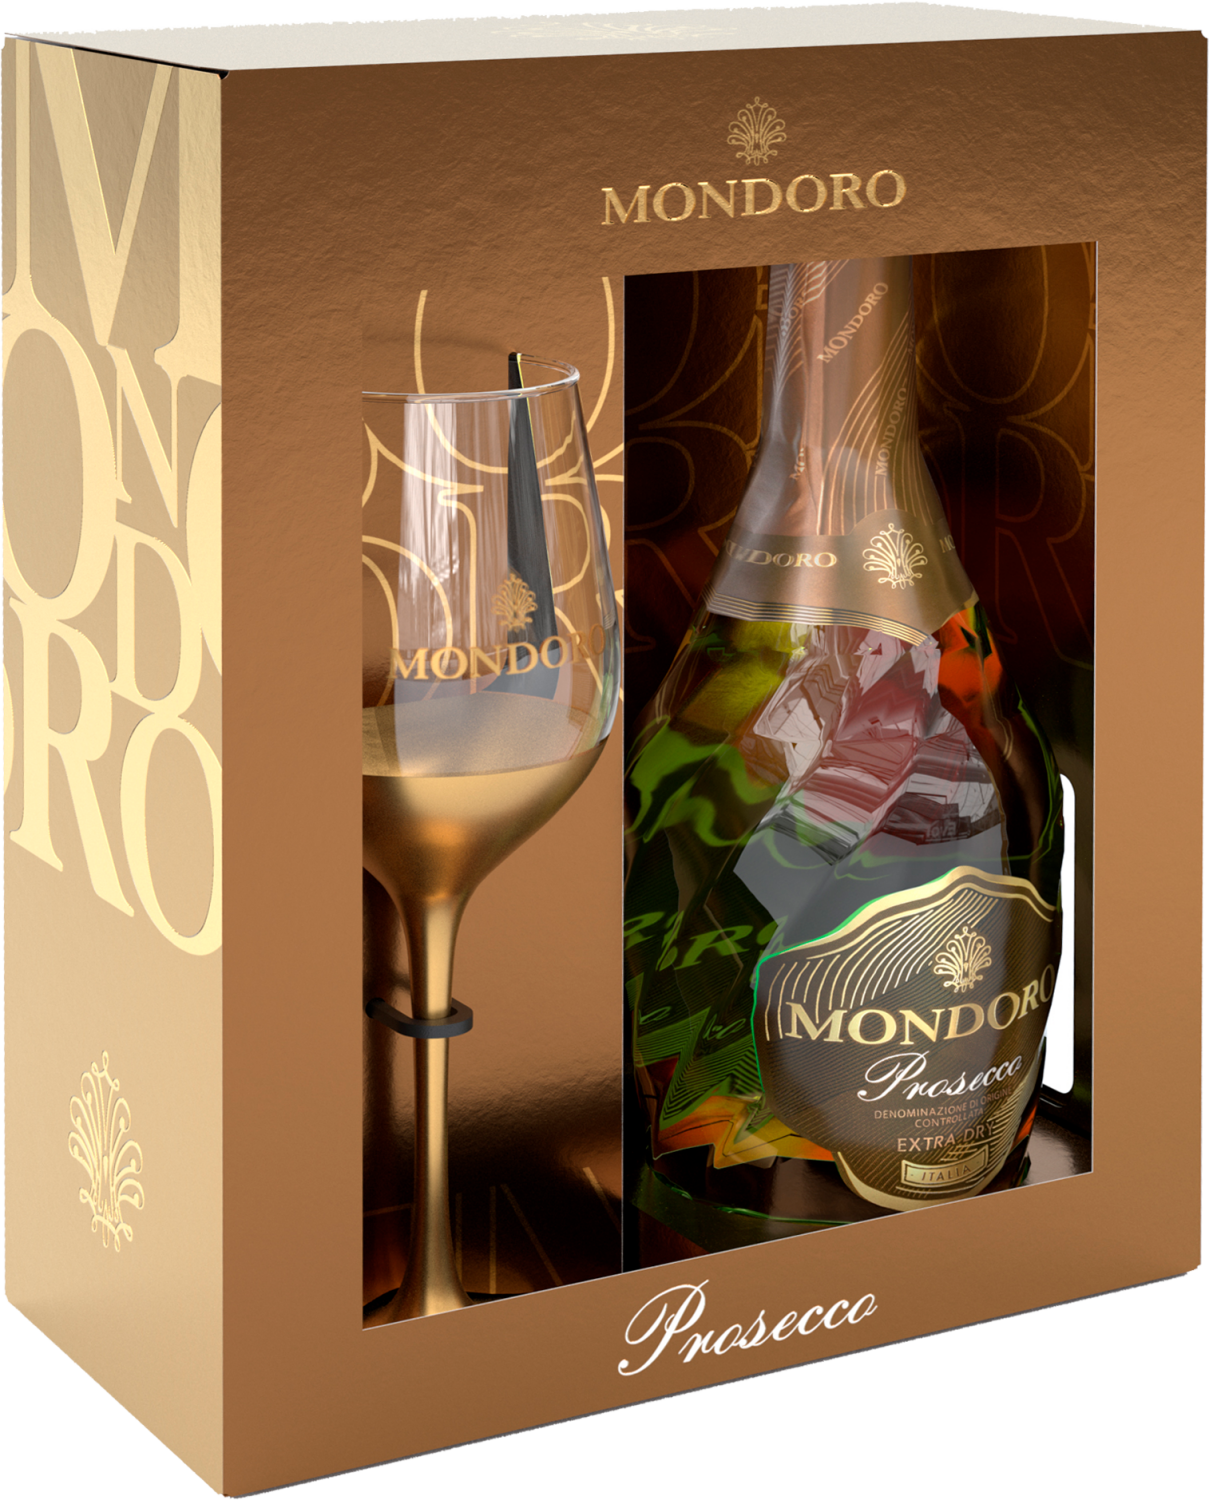 mondoro prosecco doc rose campari gift box Mondoro Prosecco DOC Campari (gift box with glass)